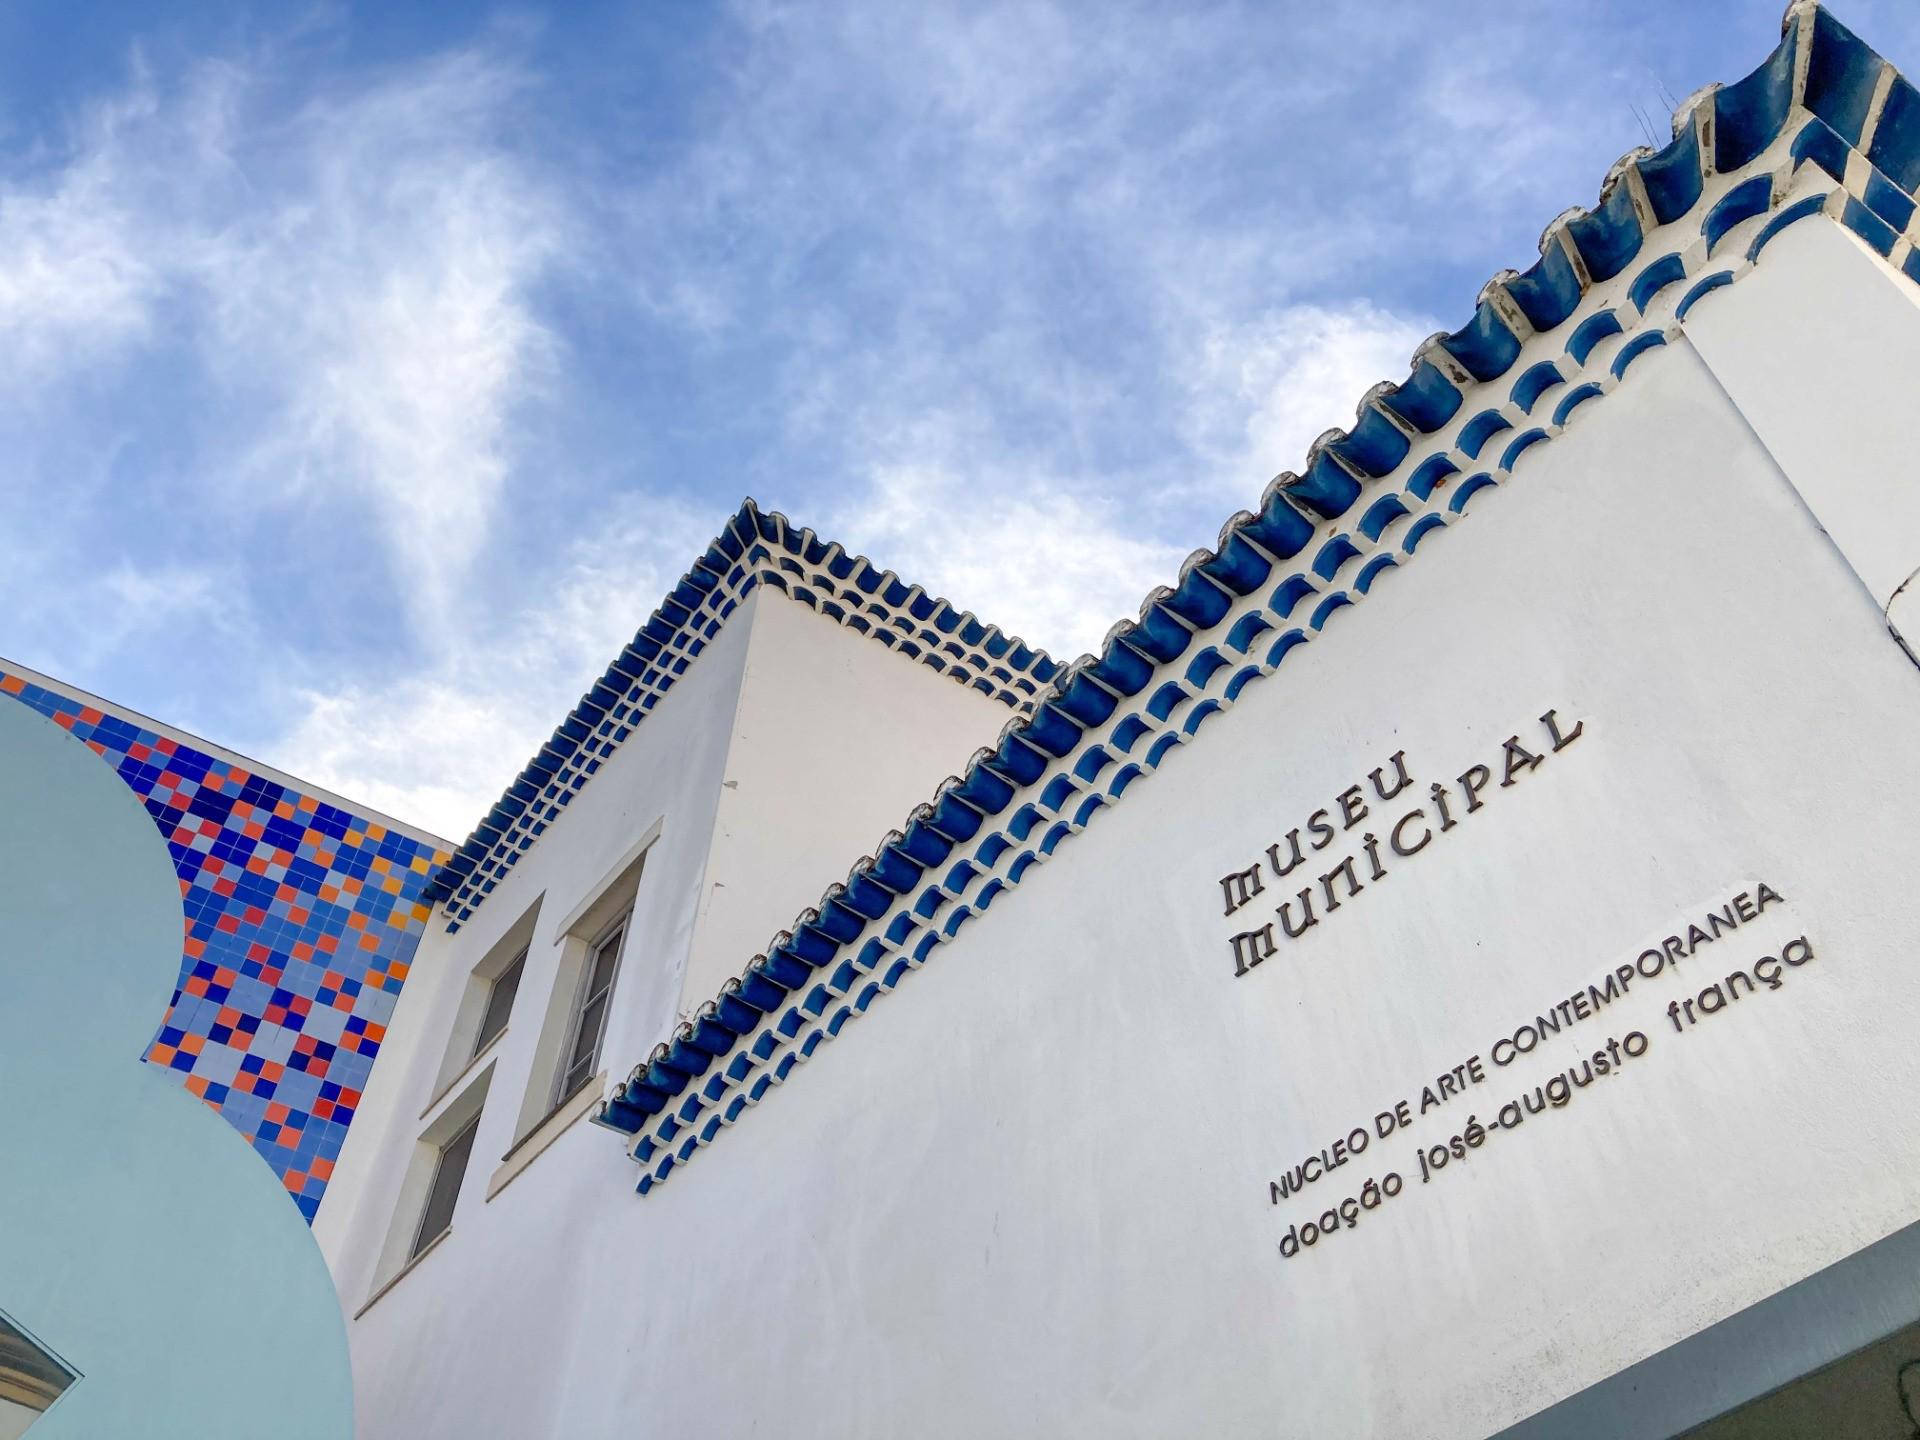 Pormenor - O Núcleo de Arte Contemporânea – Museu Municipal foi criado em 2004 e contém  mais de duas centenas de obras, entre as quais pinturas, esculturas, desenhos e fotografias, abrange um arco cronológico que se estende de 1932 aos nossos dias. 